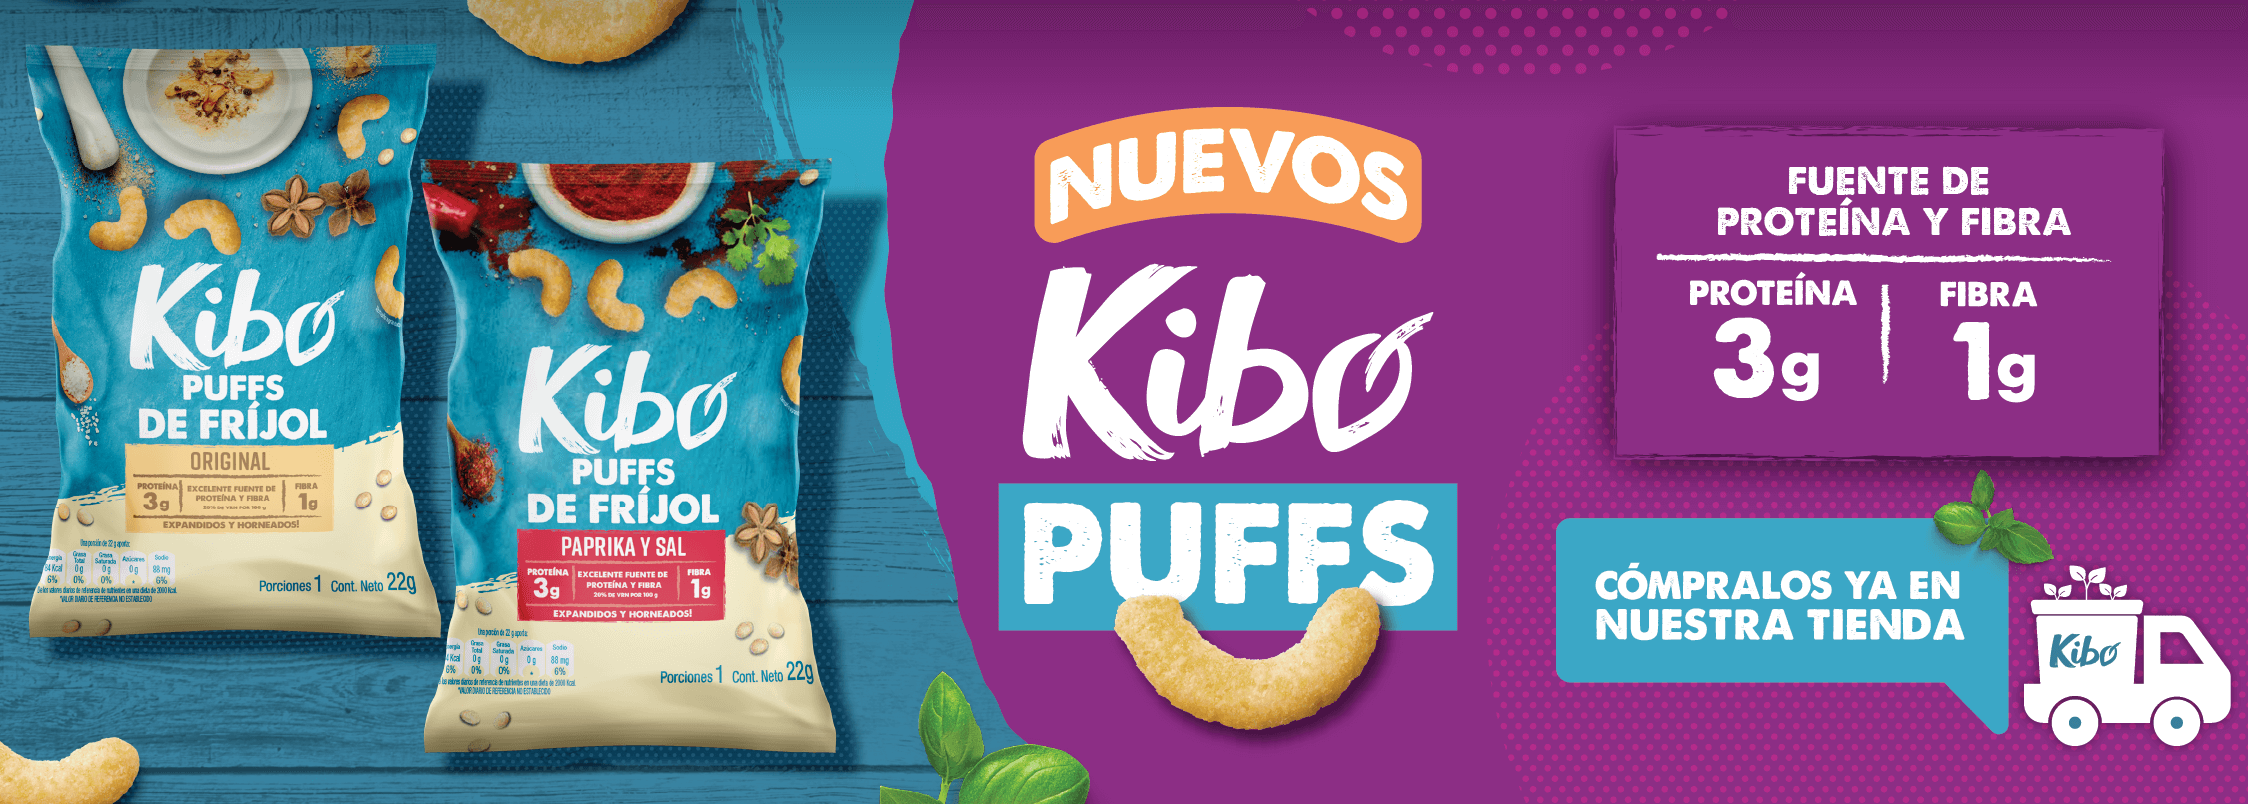 Kibo Puffs